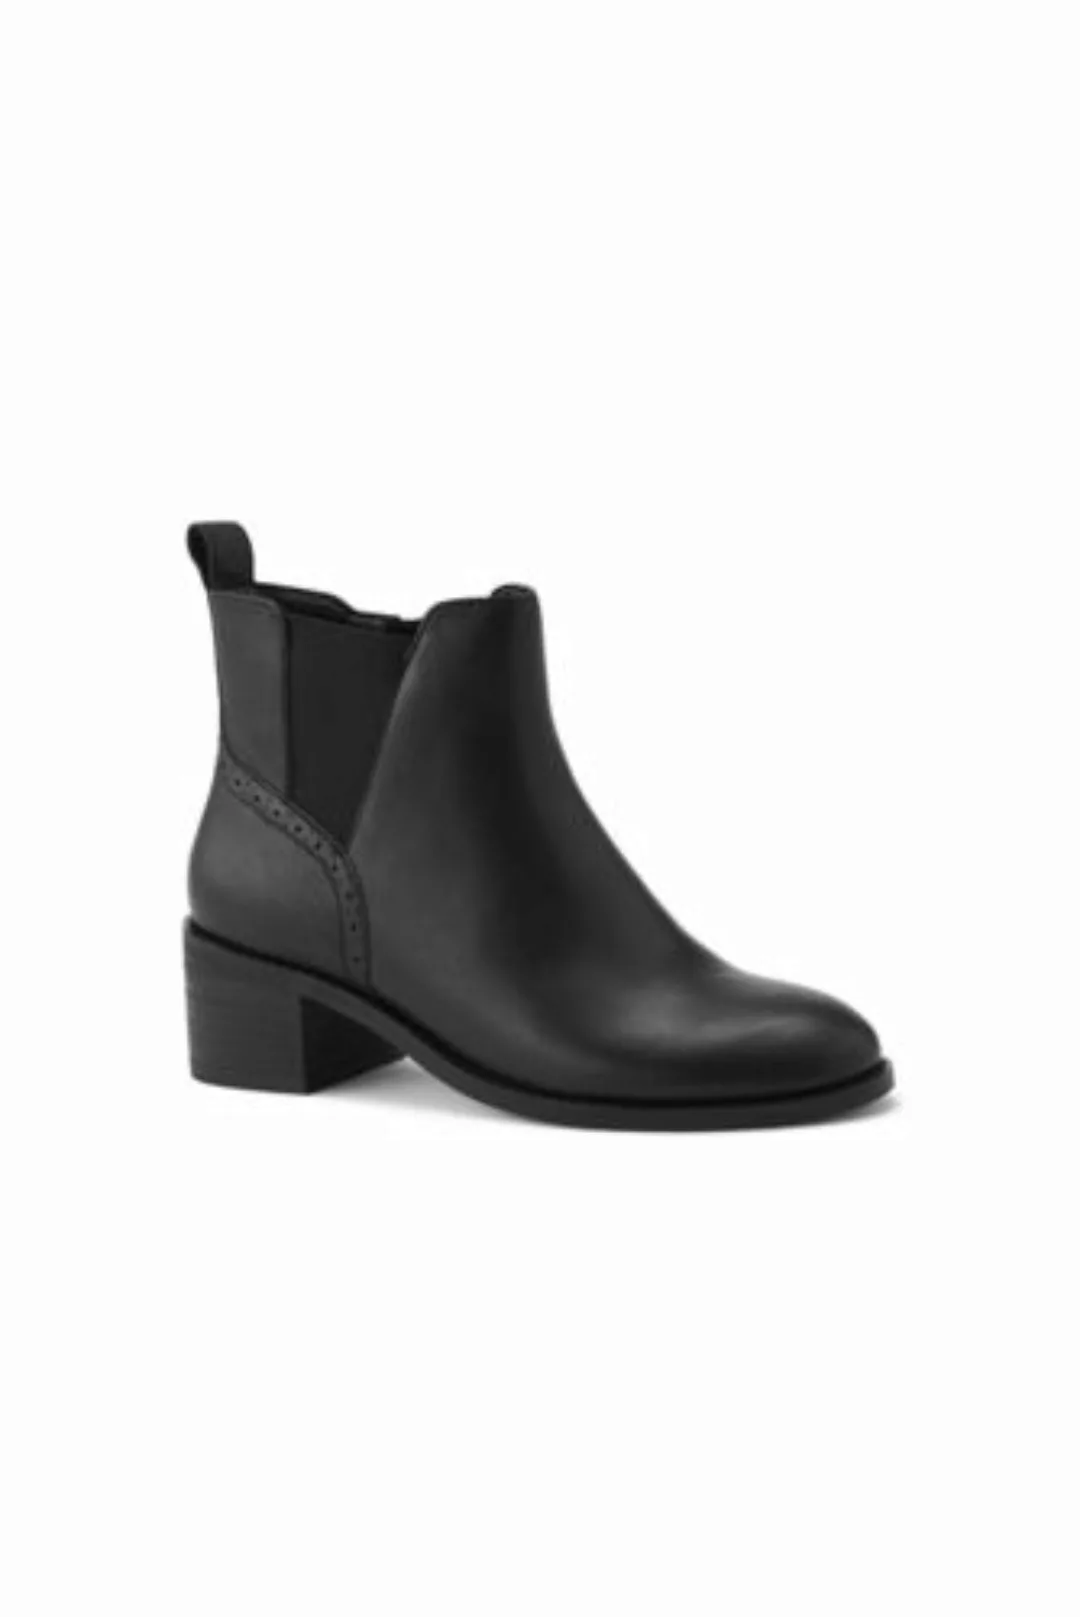 Chelsea-Boots mit Blockabsatz, Damen, Größe: 42.5 Normal, Schwarz, Leder, b günstig online kaufen